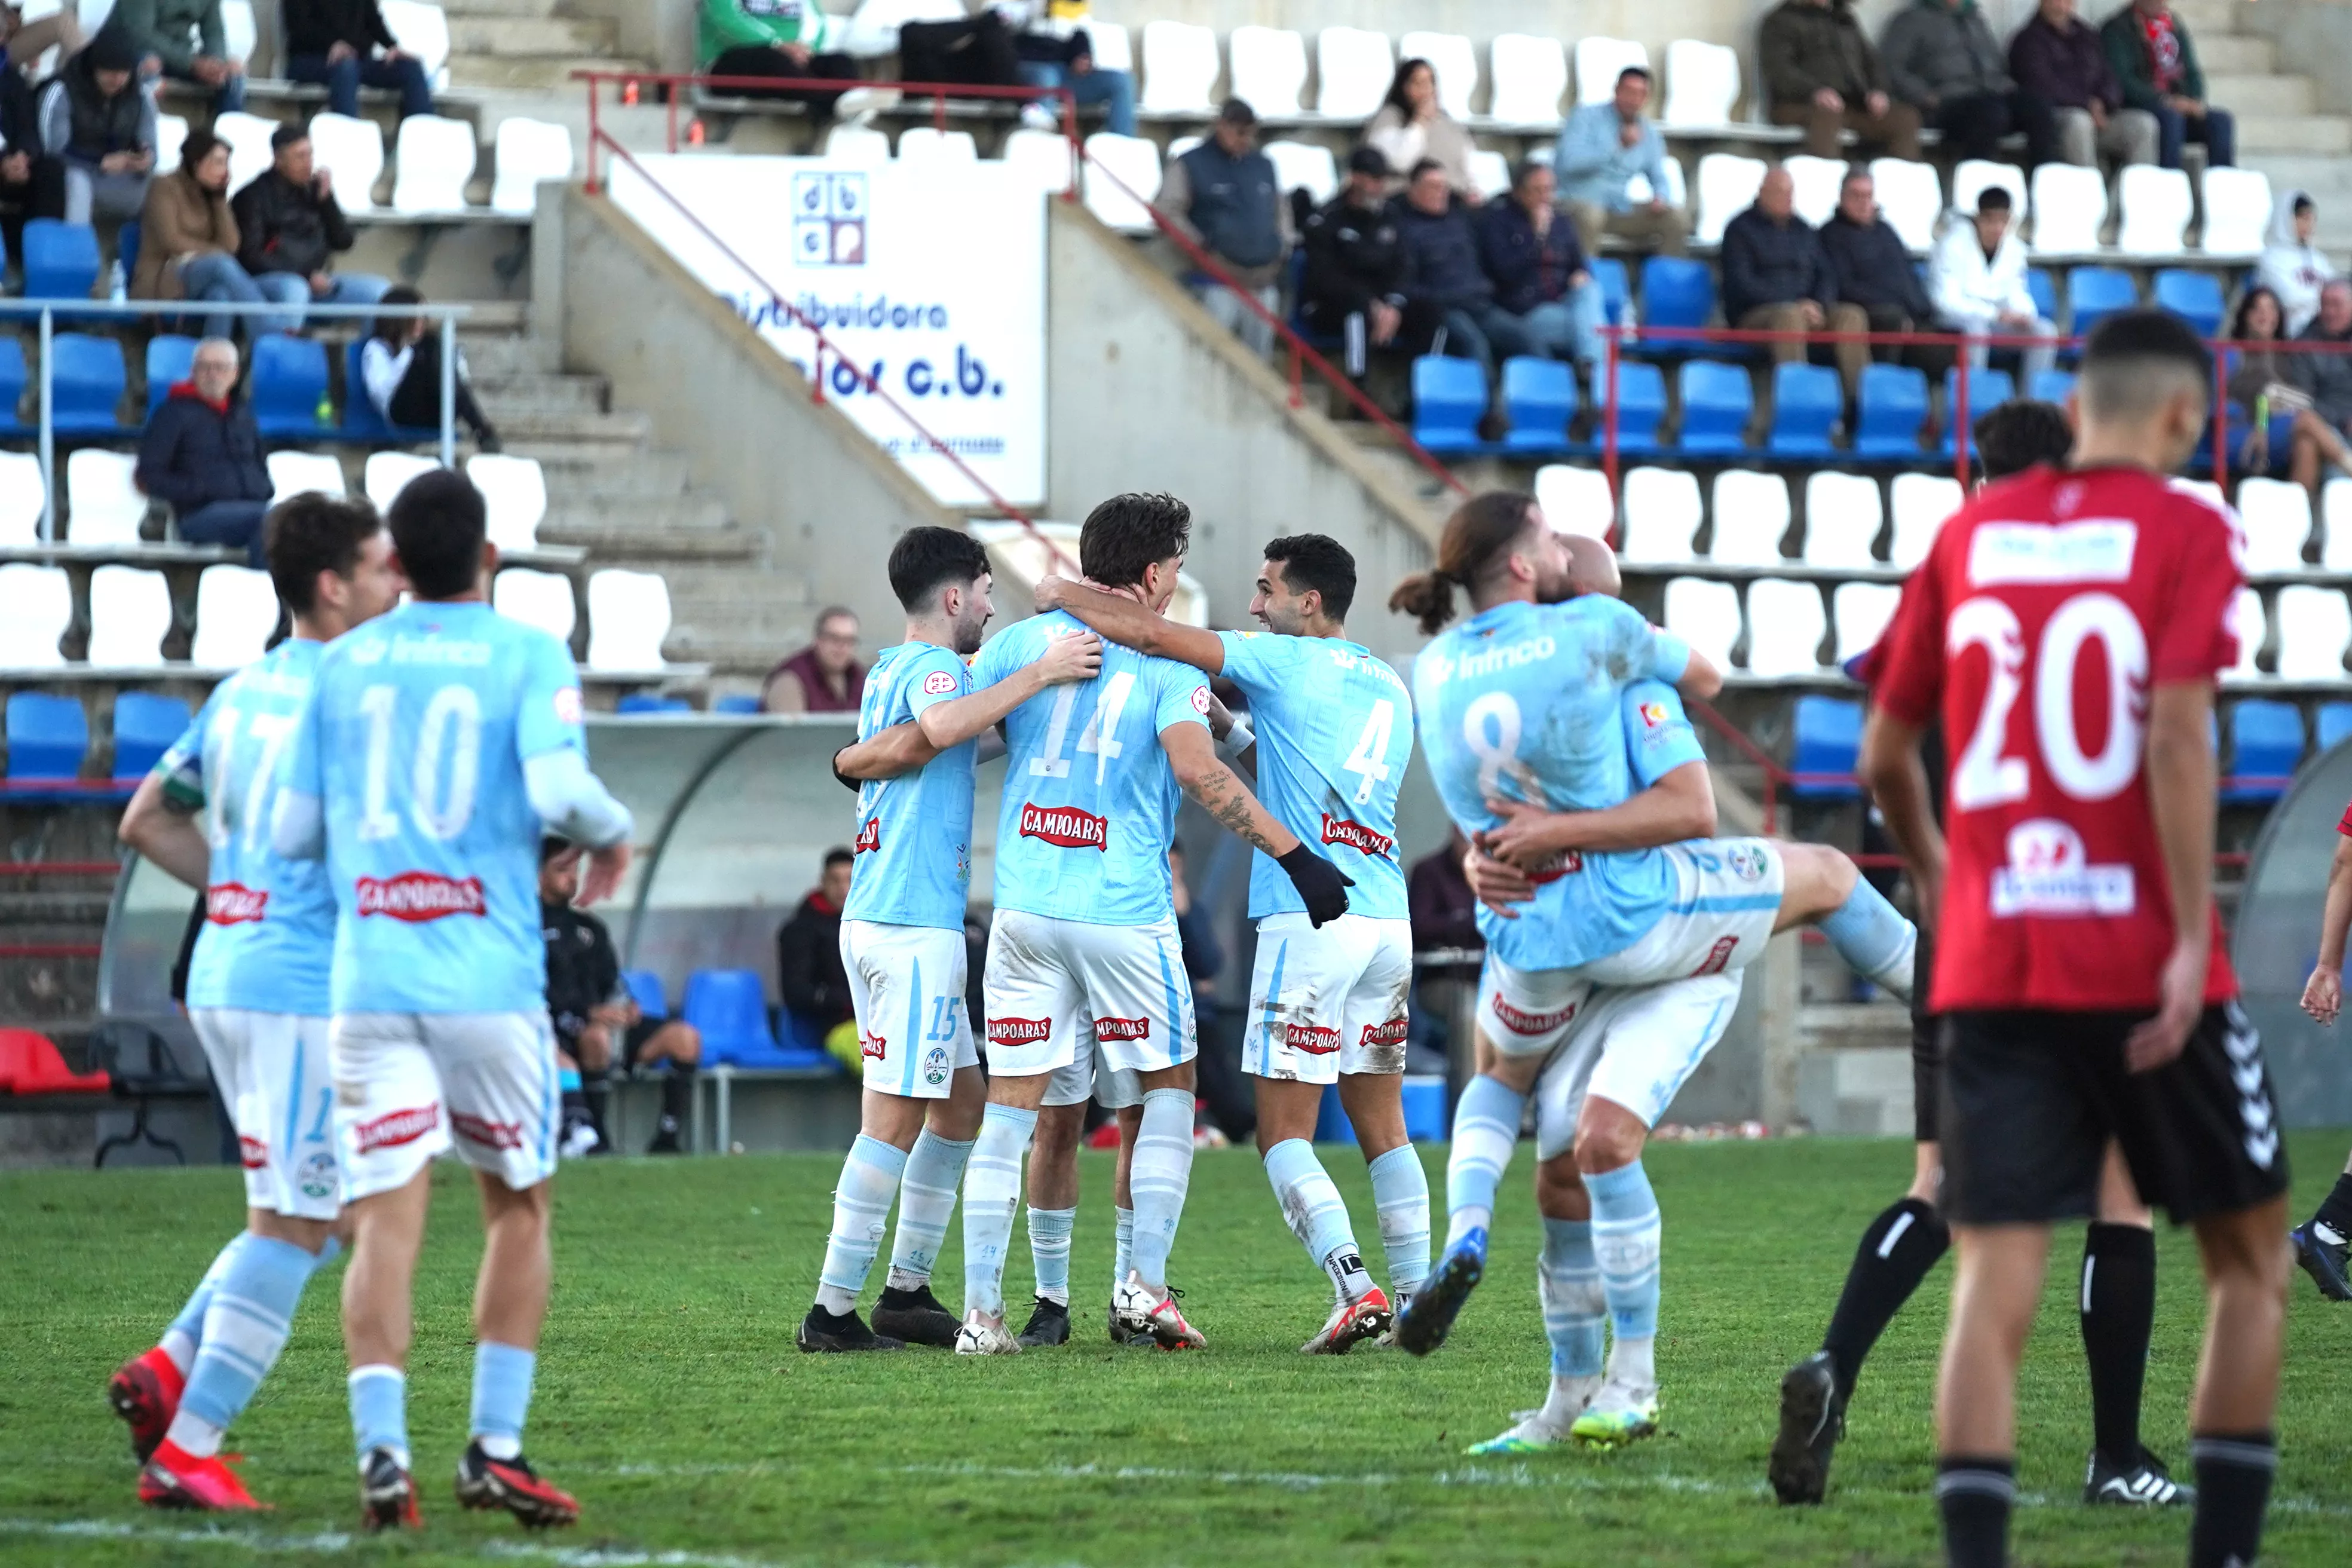 Los jugadores celebran el segundo gol frente al Cartaya, conseguido por Ricky Wagner. Foto: Antonio Dávila